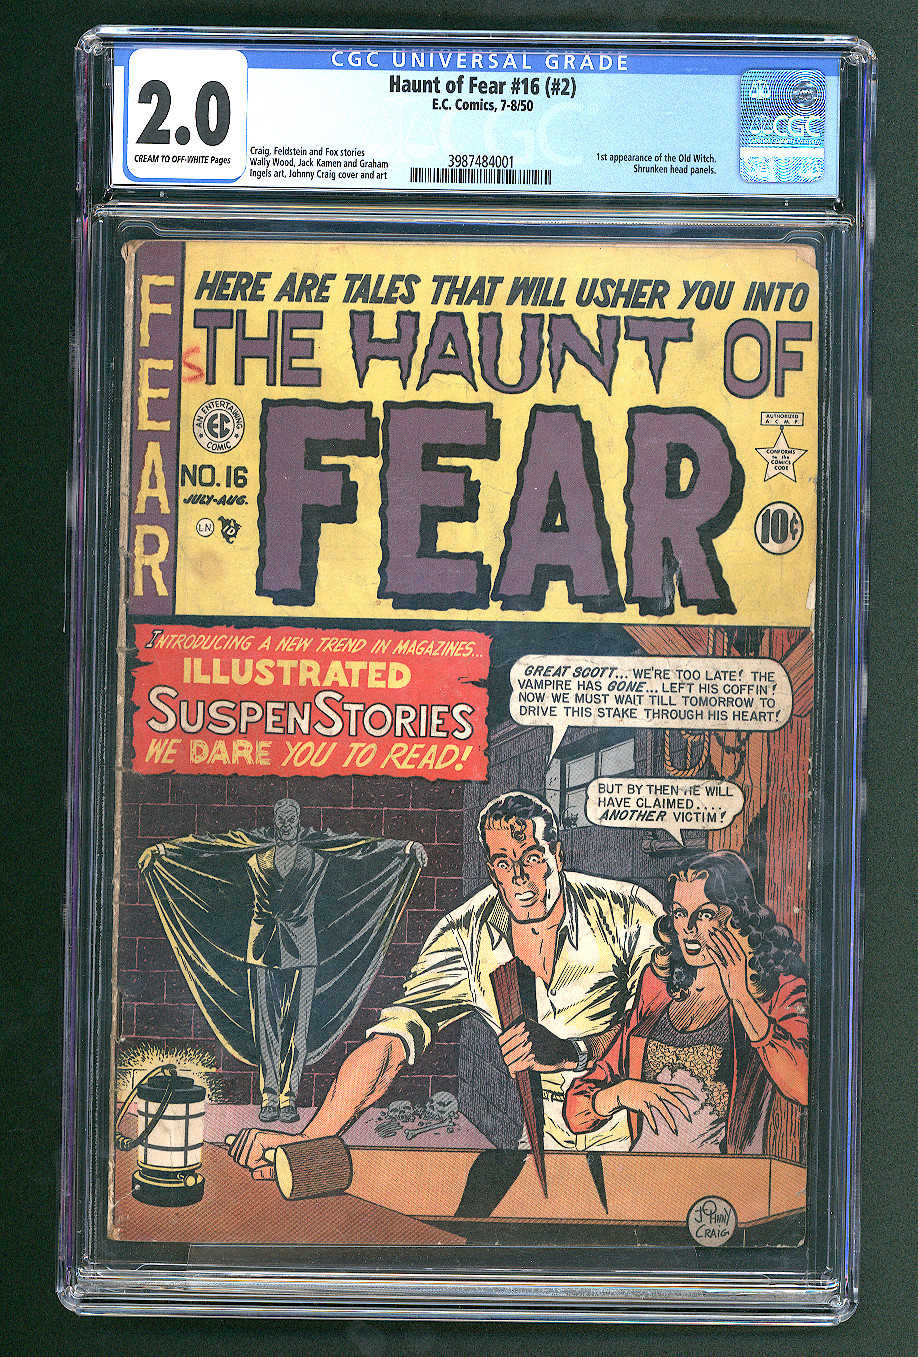 Haunt of Fear #16 #2 (1950) CGC 2.0